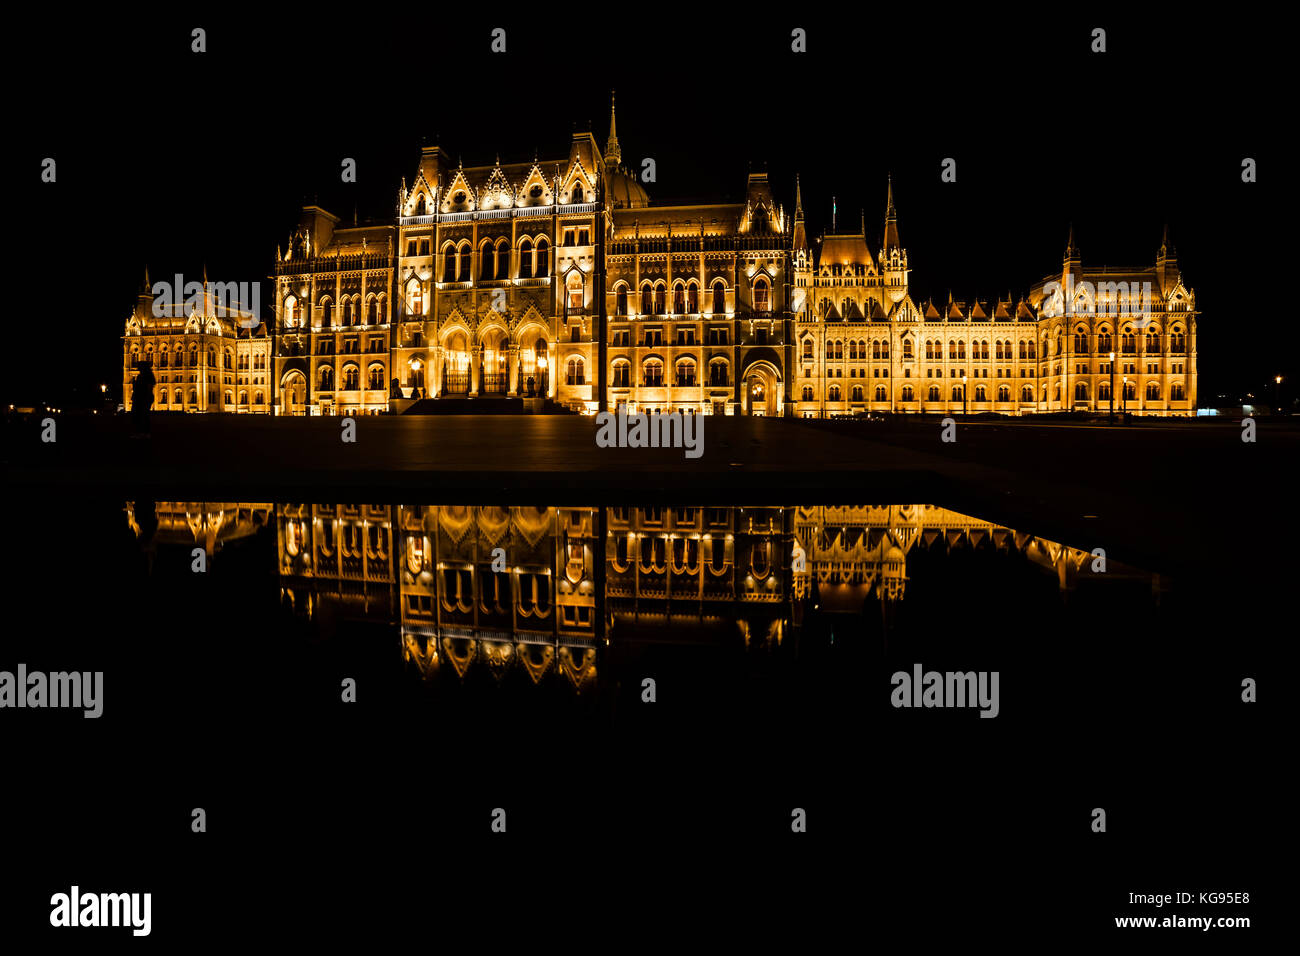 Ungheria, Budapest, ungherese il palazzo del parlamento è illuminato di notte con un riflesso speculare in acqua Foto Stock